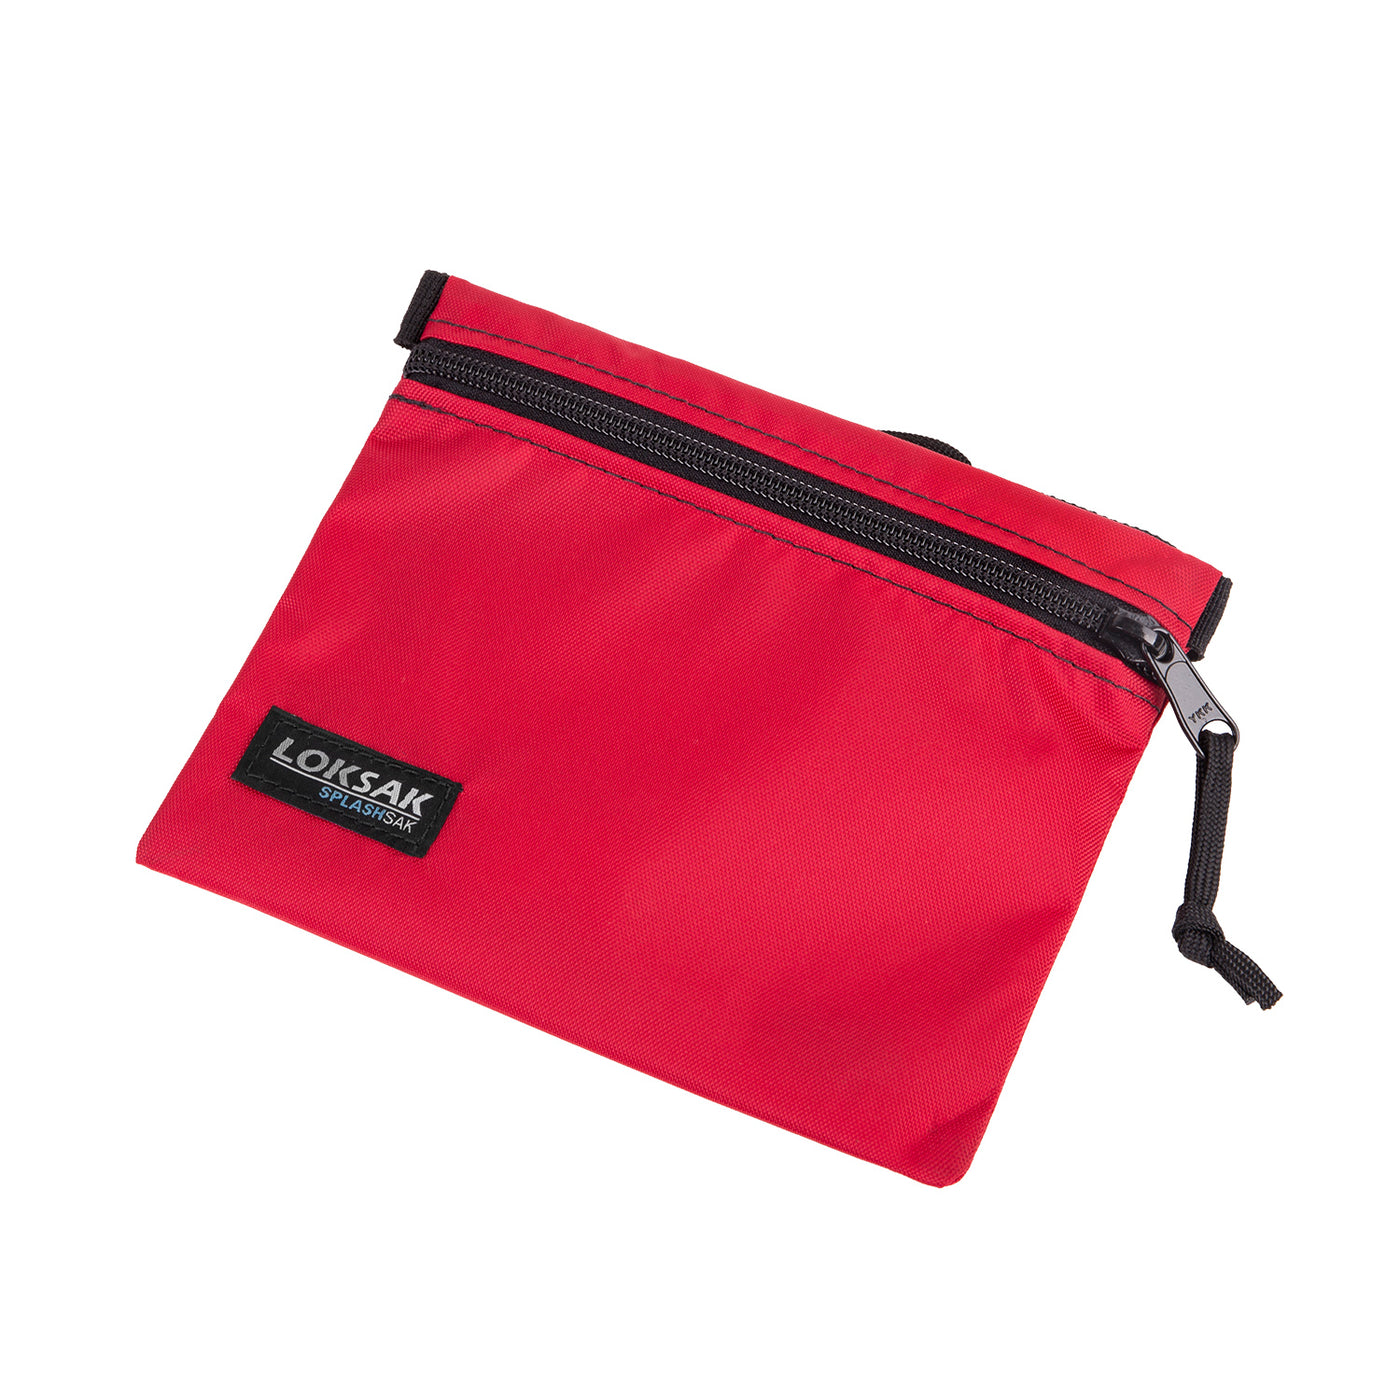 Loksak Splashsak Medium Zip Waist Pack with 2 Waterproof Dry Bags Insi ...